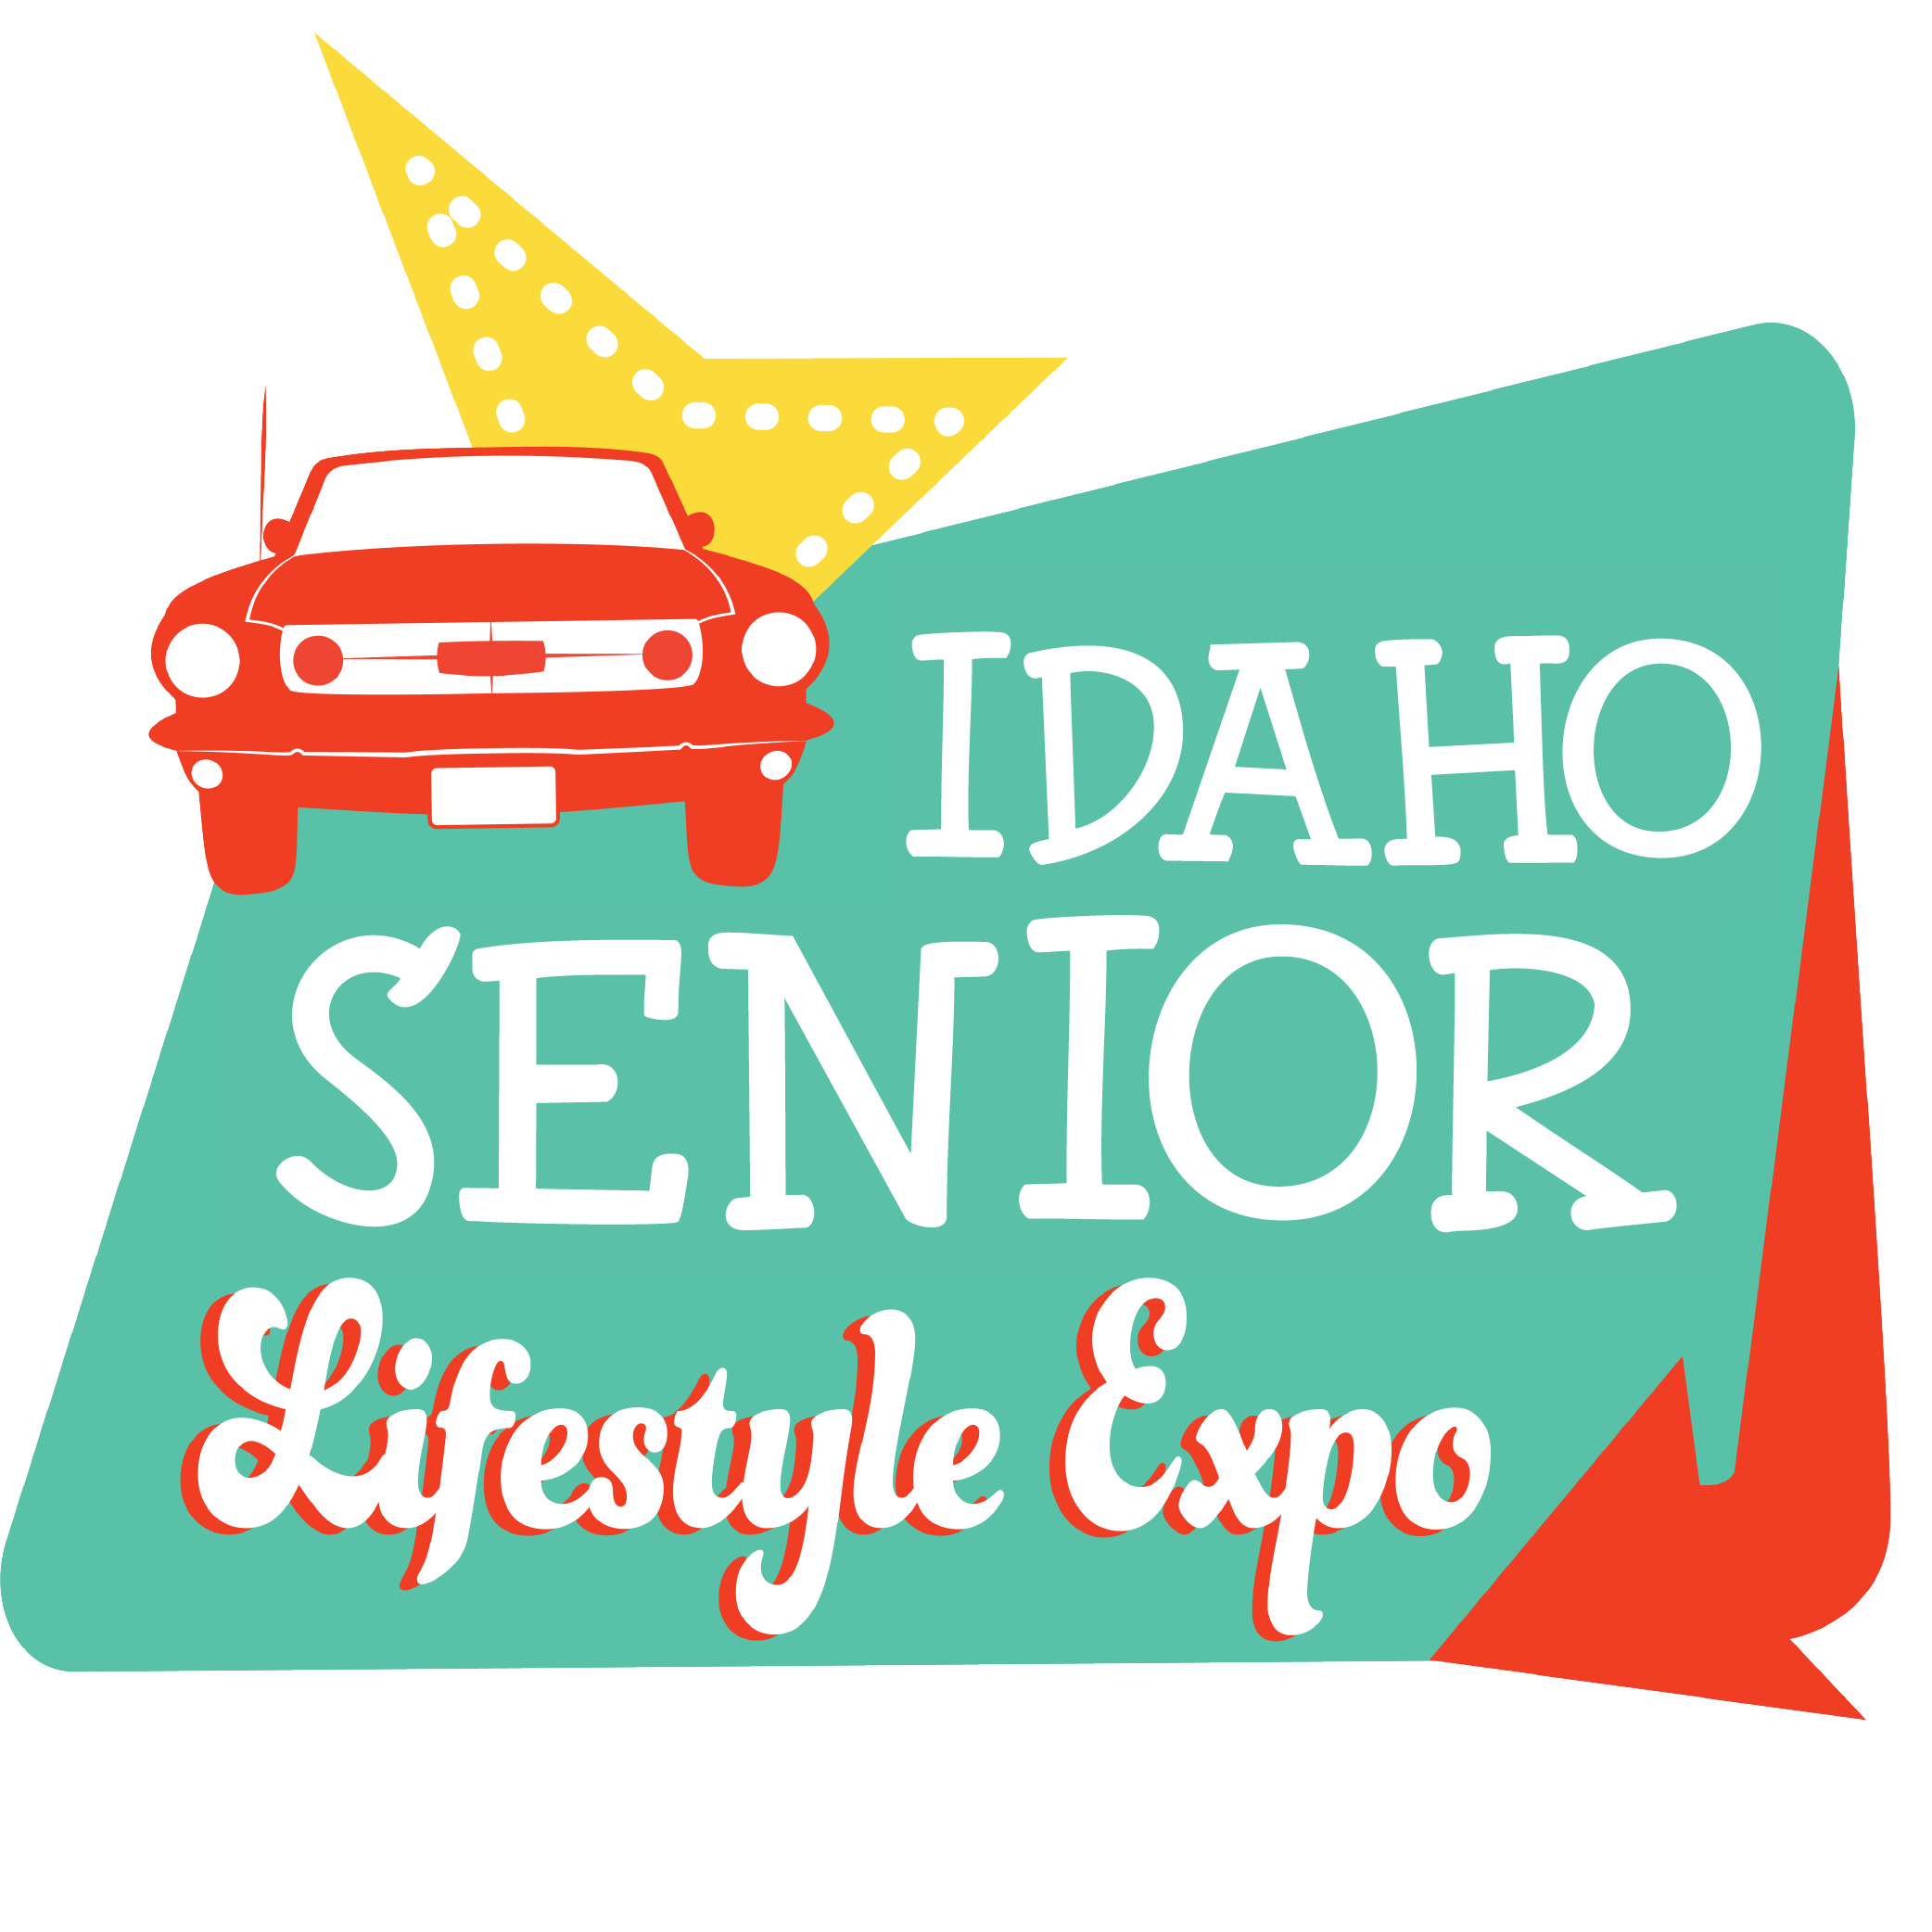 Idaho Senior Expo